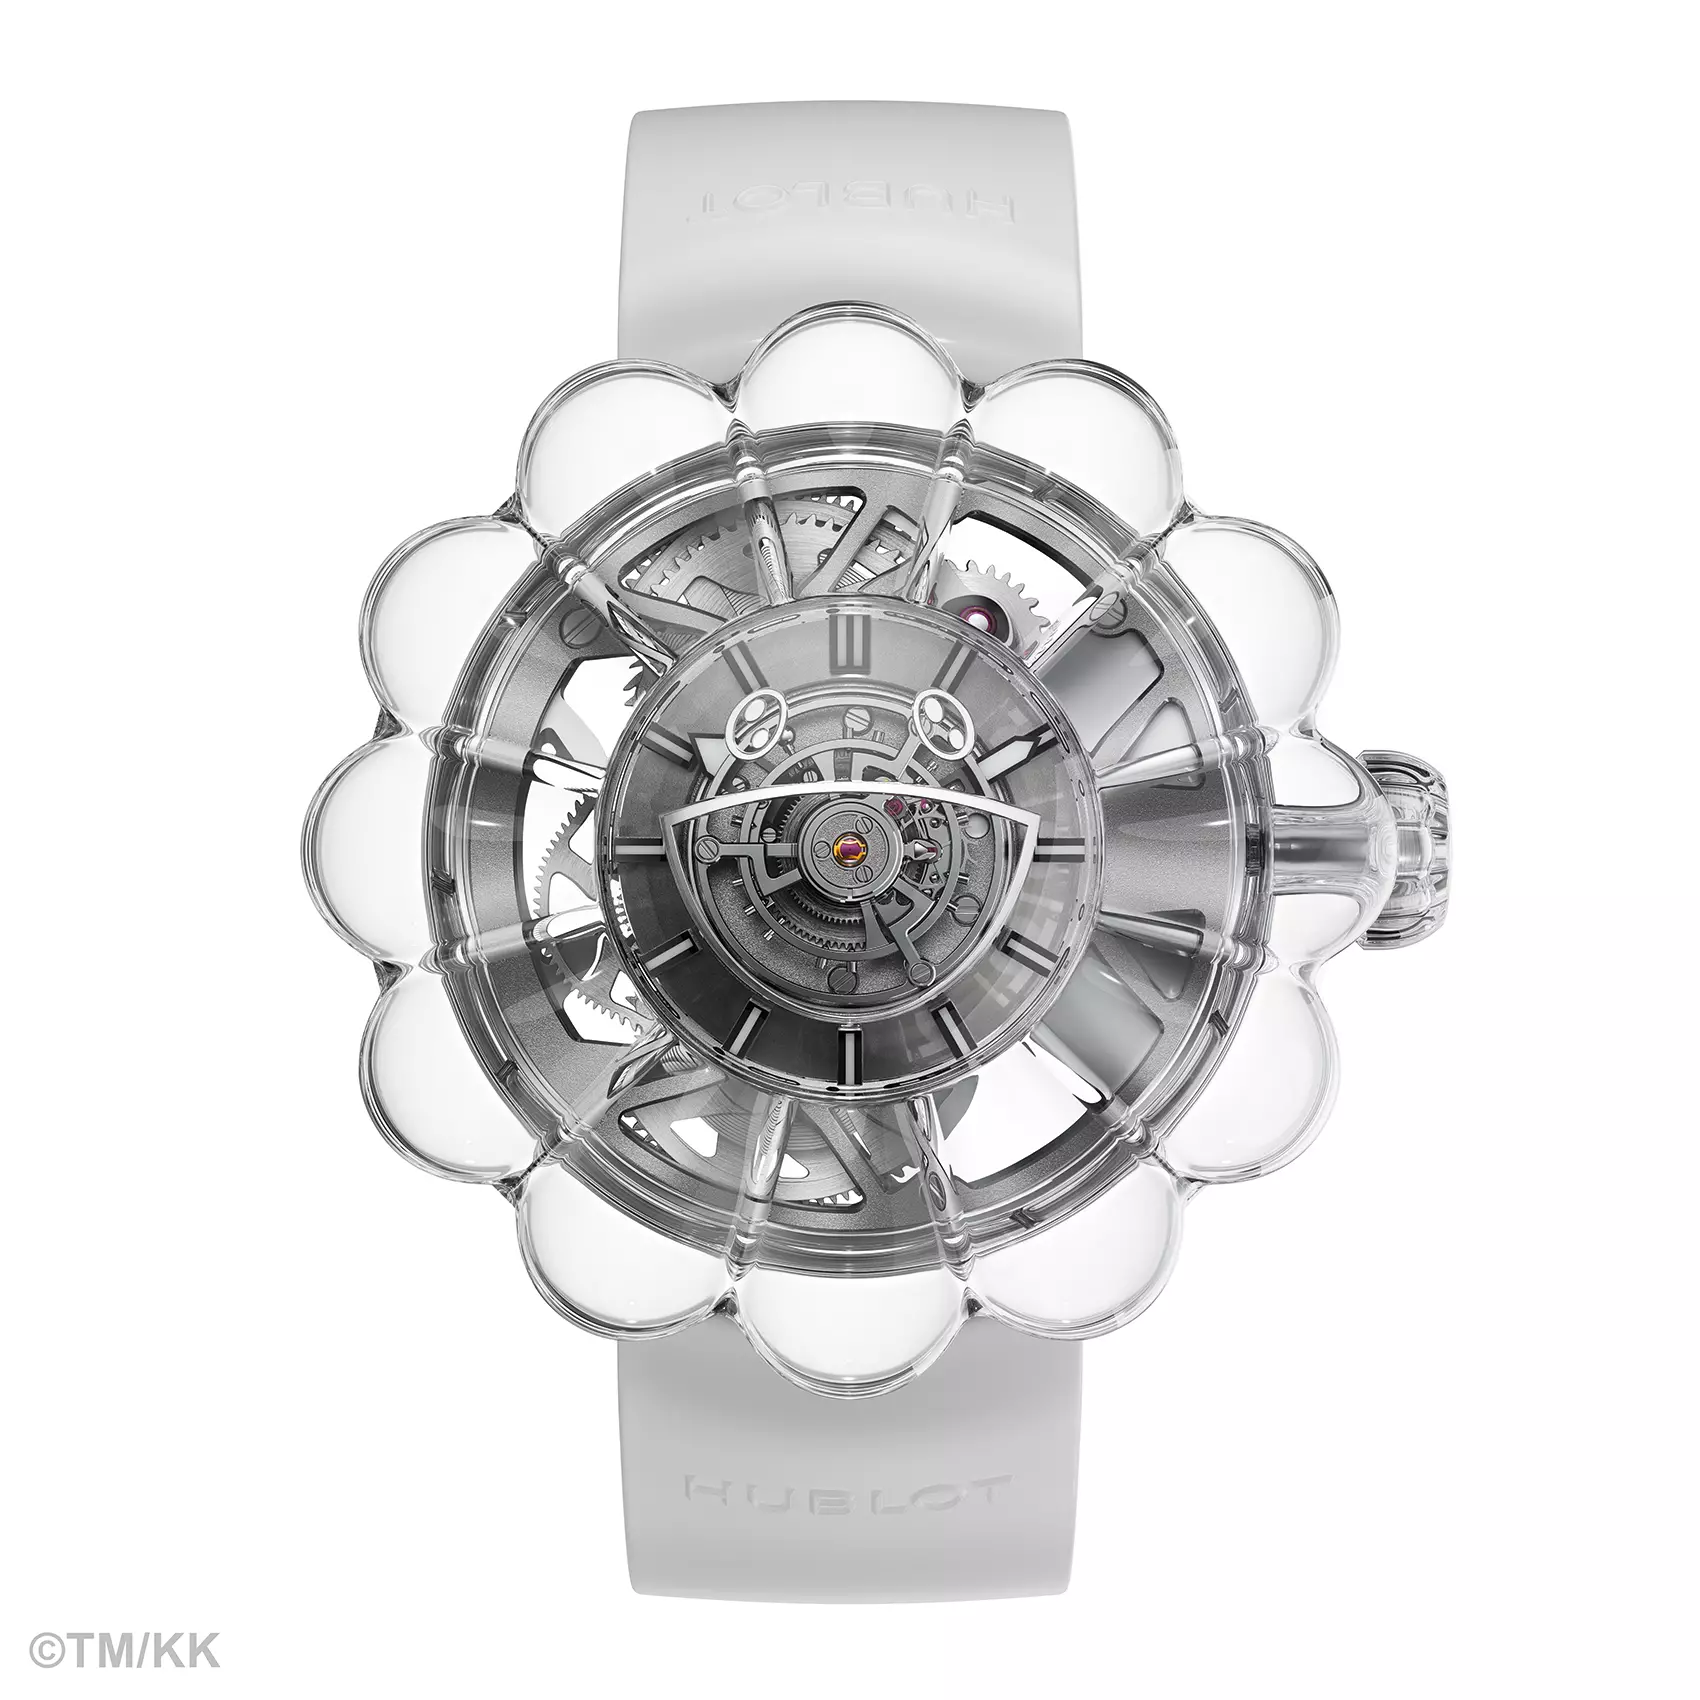 Takashi Murakami et Hublot collaborent à la création d'une montre tourbillon MP-15 transparente avec des pétales en saphir uniques